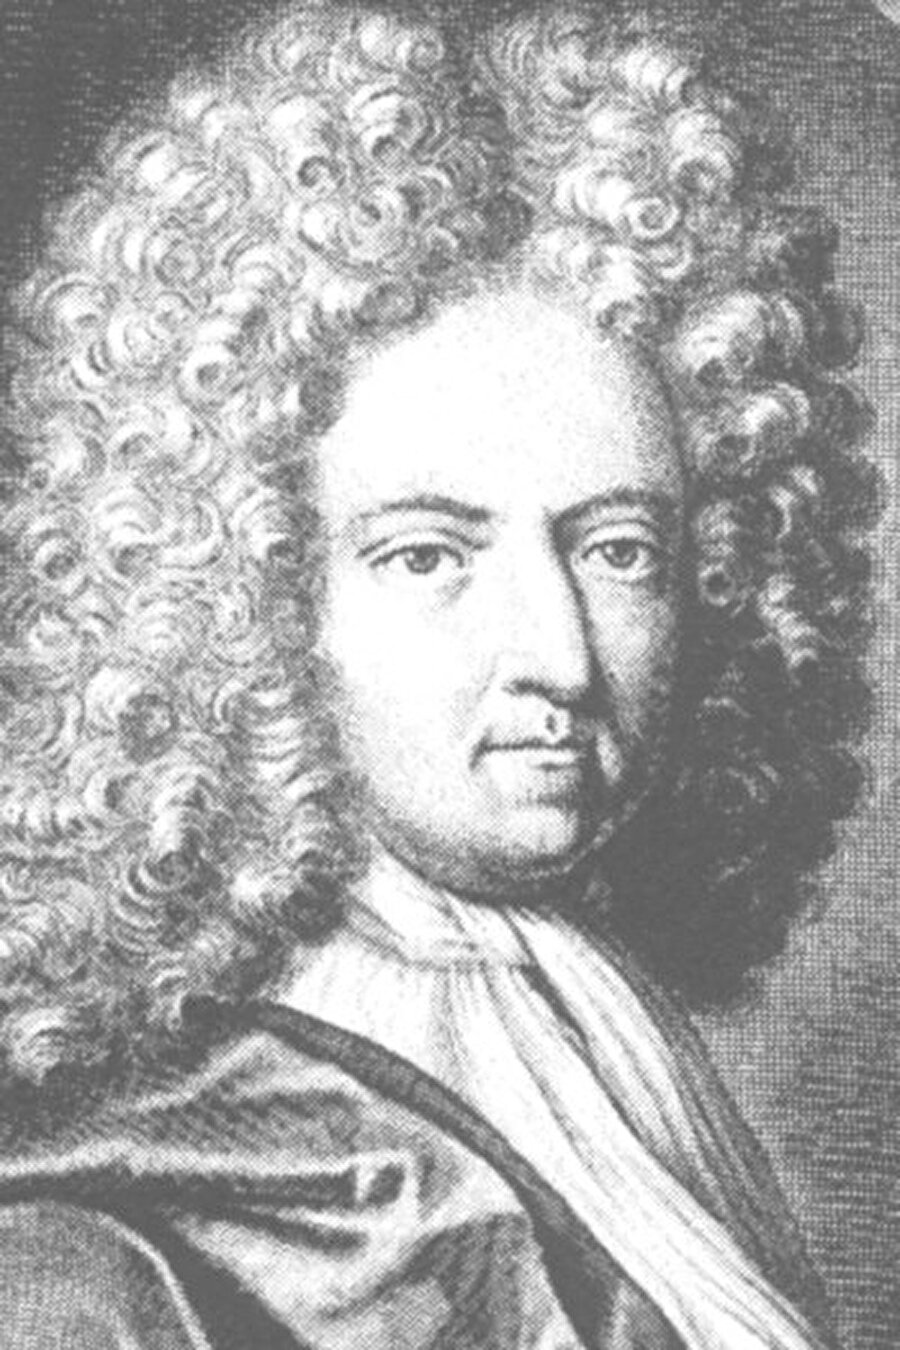 Daniel Defoe

                                    
                                    1660 yılında Londra'da doğan Daniel Defoe'nin hayatındaki çeşitli güçlükler yazım hayatını da etkiledi. İngiltere Kralı 2. James'e karşı düzenlenen ayaklanmaya katıldı. Defoe, birçok mesleğe girip çıktıktan sonra (tüccarlık, fabrikatörlük, devlet memurluğu, casusluk) 40 yaşında gazetecilik yapmaya başladı. Yazdığı eserlerden en çok ilgi göreni ise 1719 yılında yayımladığı Robinson Crusoe oldu. Adada tek başına yaşam savaşı veren bir adamı anlatan bu kitap çok büyük satış rakamlarına ulaştı. Bugün de bu kitap en çok okunanlar arasında anılmaya devam ediyor. Daniel Defoe'nin yaşamındaki belki de en ilginç ayrıntı casusluk yapmış olmasıdır. Kökenleri Romanya'ya dayana Defoe'nin ailesinin onu Osmanlı geleneklerine göre yetiştirdiği iddia edilir. Defoe Osmanlı'nın üst düzey devlet adamlarına gönderdiği İngiltere hakkında bilgiler içeren mektuplarından ötürü bir kesim tarafından “casus” olarak suçlanıyor. Yaşamı boyunca siyasete derin bir ilgi duyan Defoe birçok kez hapse girip çıkmıştır.

                                
                                